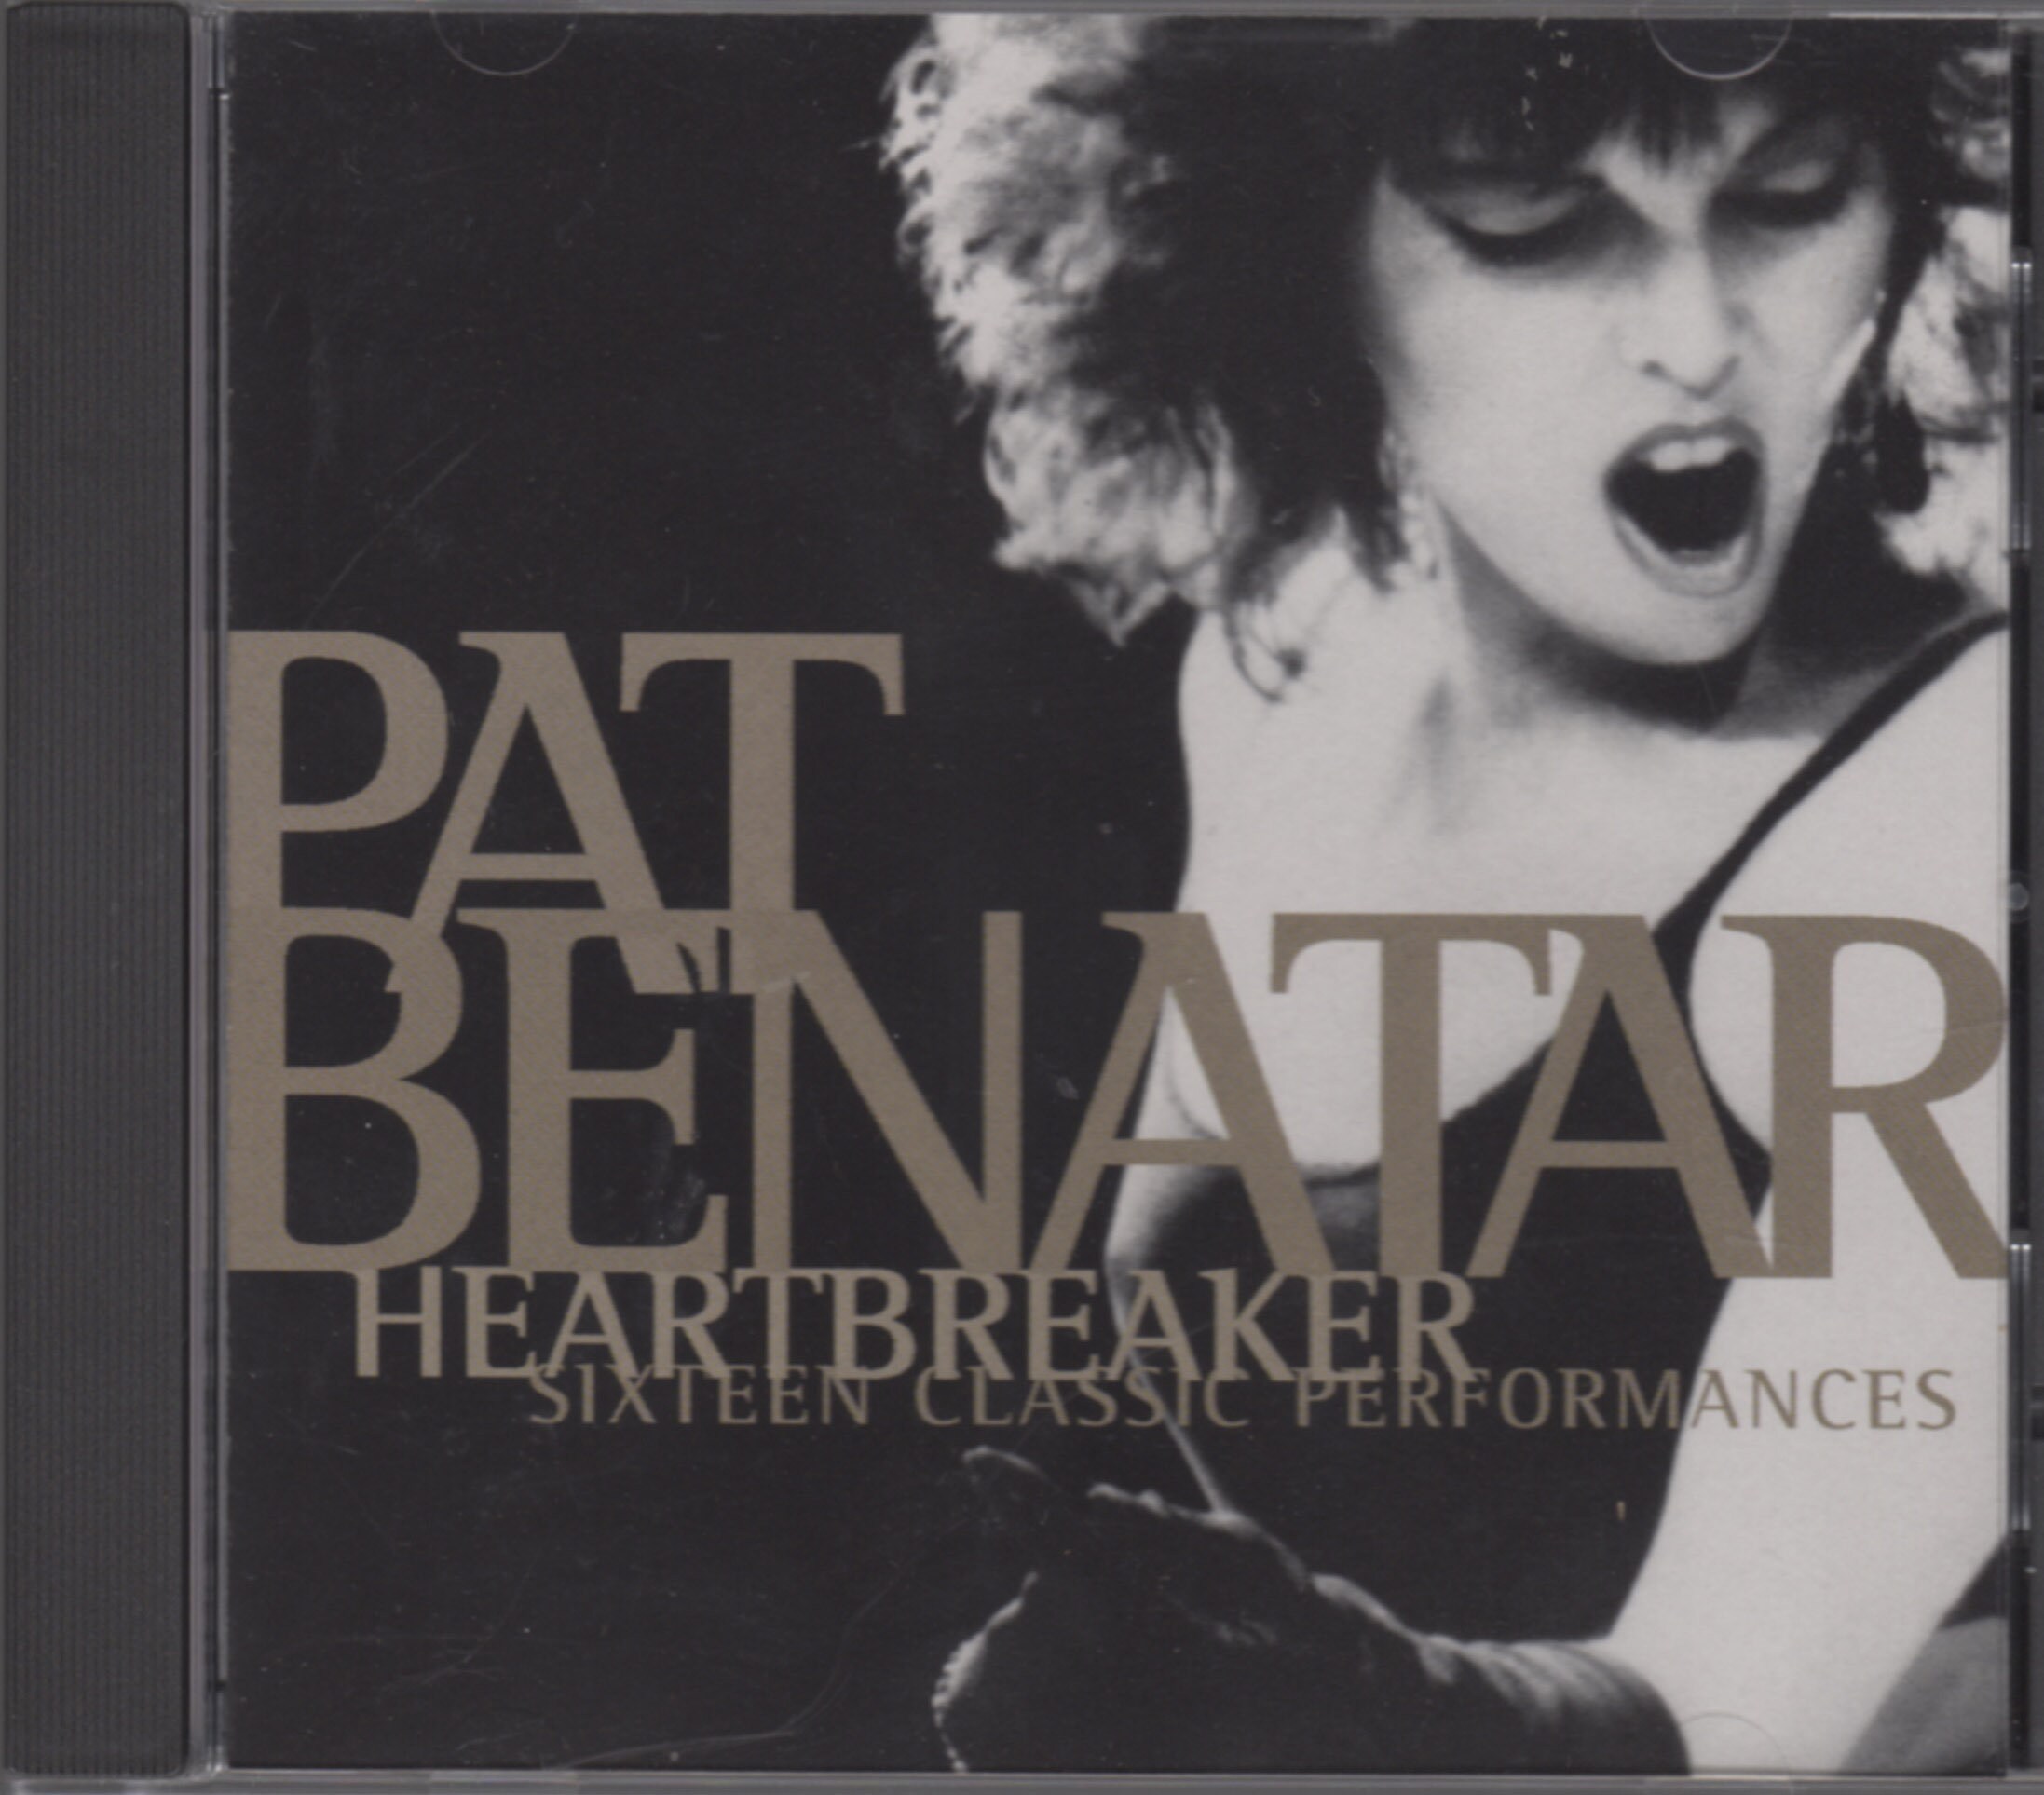 Pat heartbreaker. Pat Benatar. Pat Benatar Heartbreaker. Pat Benatar 2022. Pat Benatar Heart Breaker.